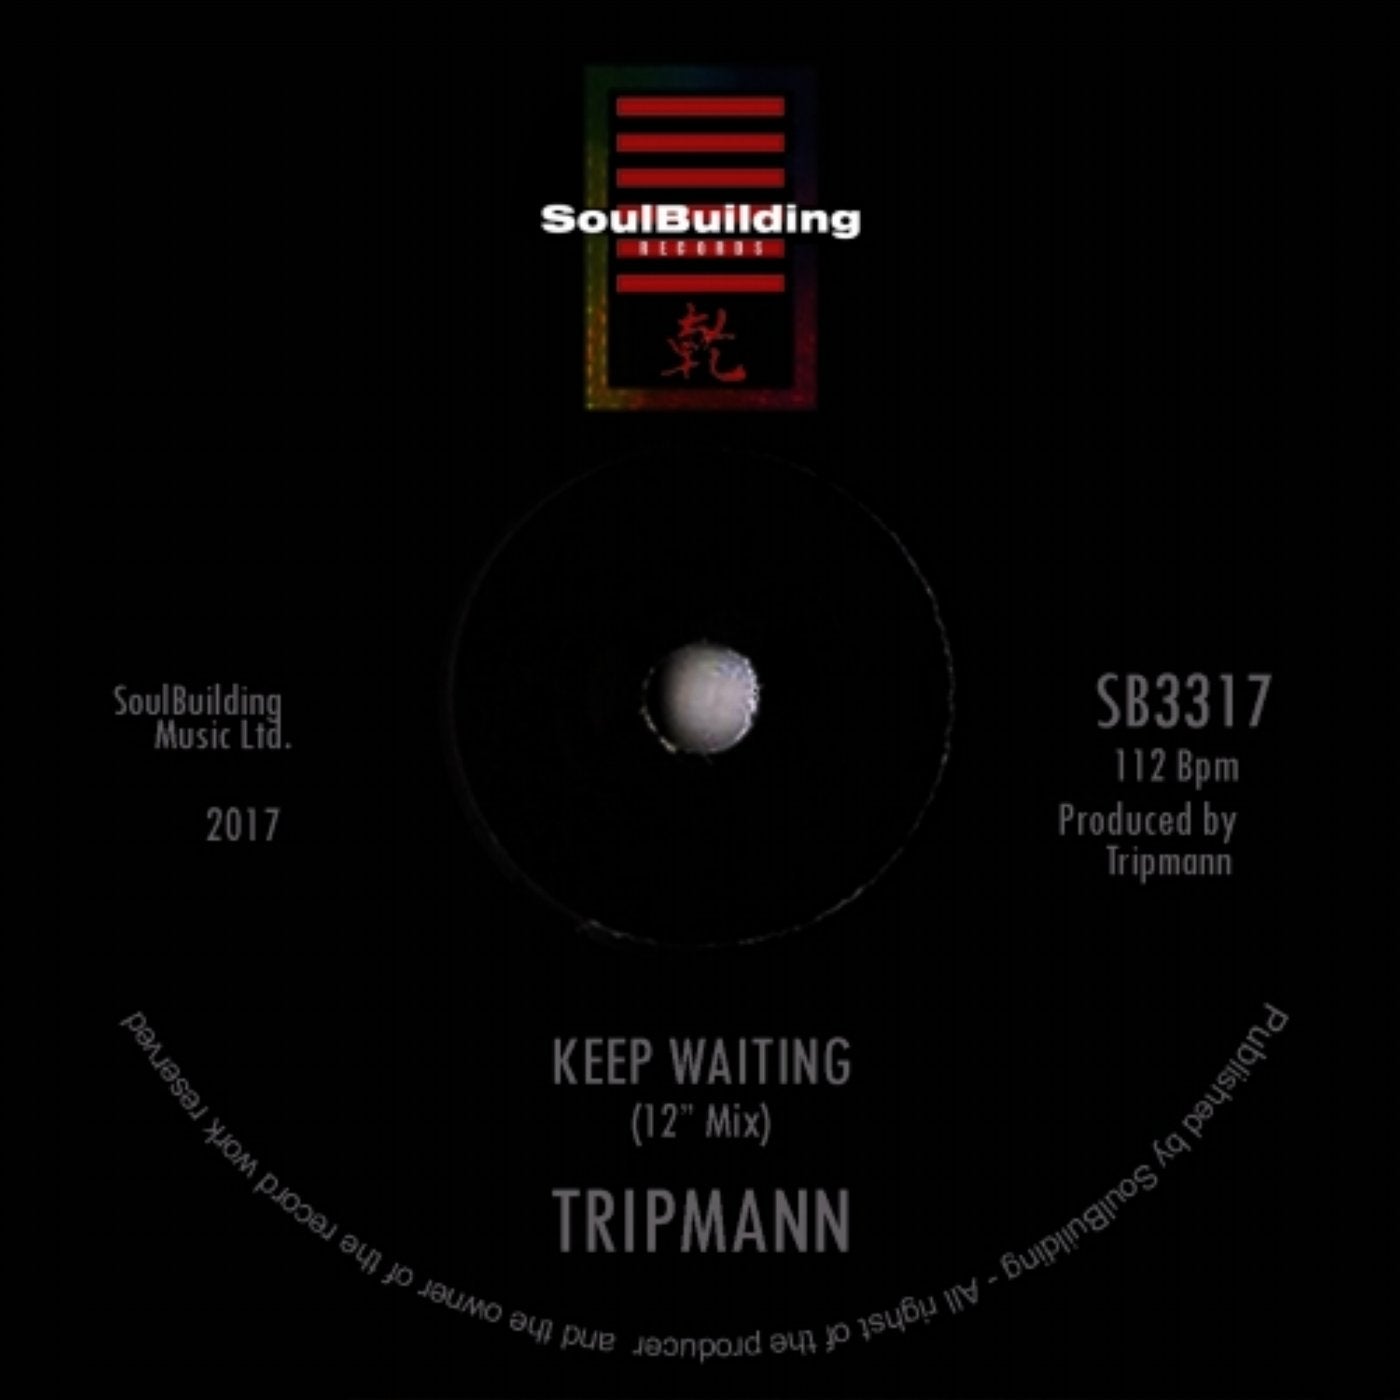 Keep Waiting (12" Mix)